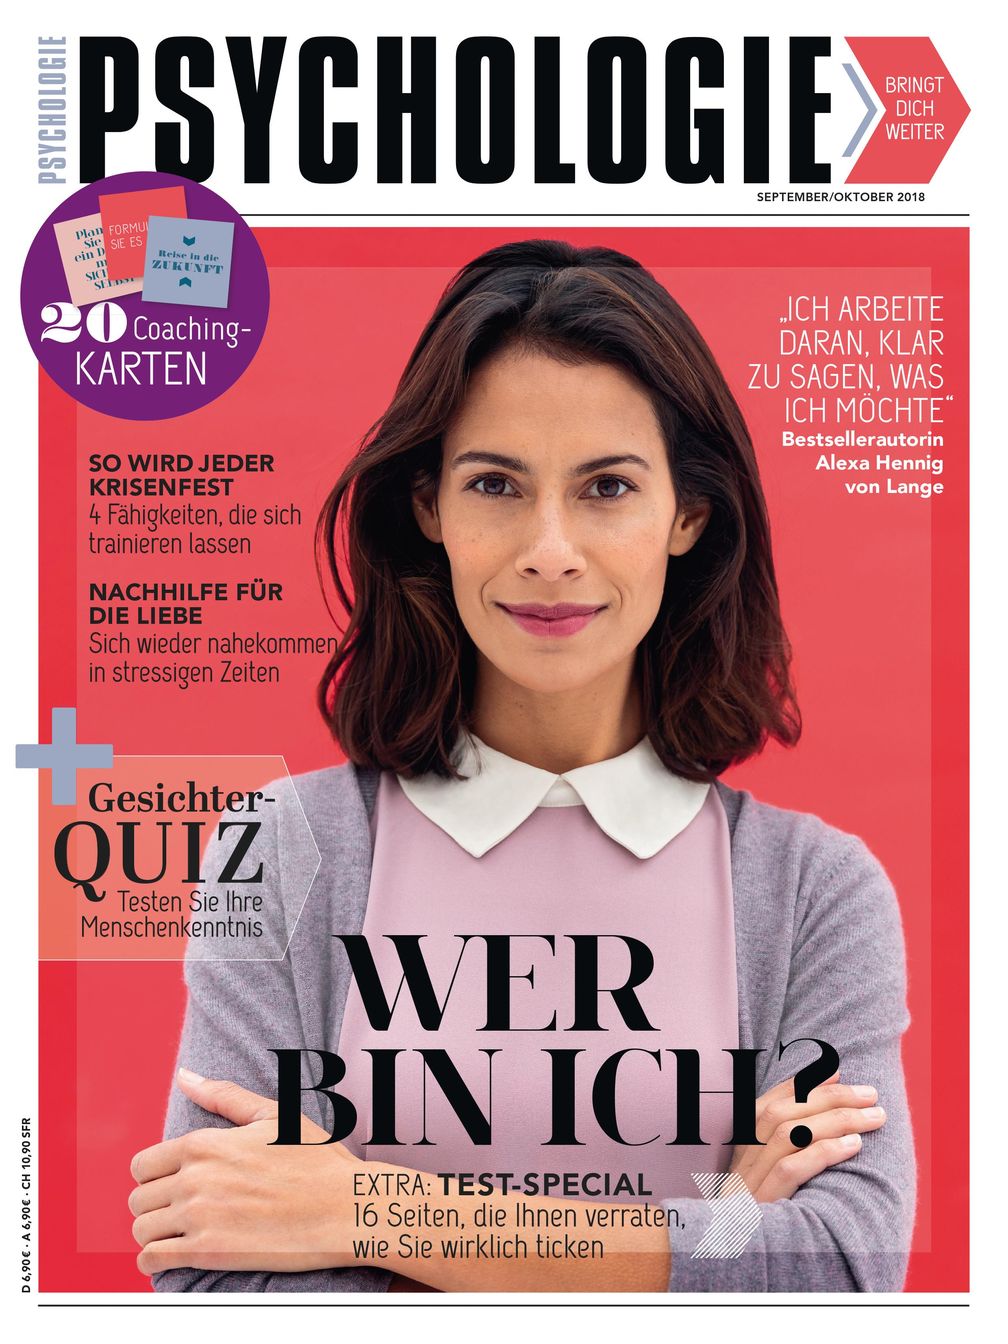 INSPIRING NETWORK GmbH & Co. KG, Titelbild zu Ausgabe 05/2018, EVT: 08.08.2018, Titelthema: "Wer bin ich?".